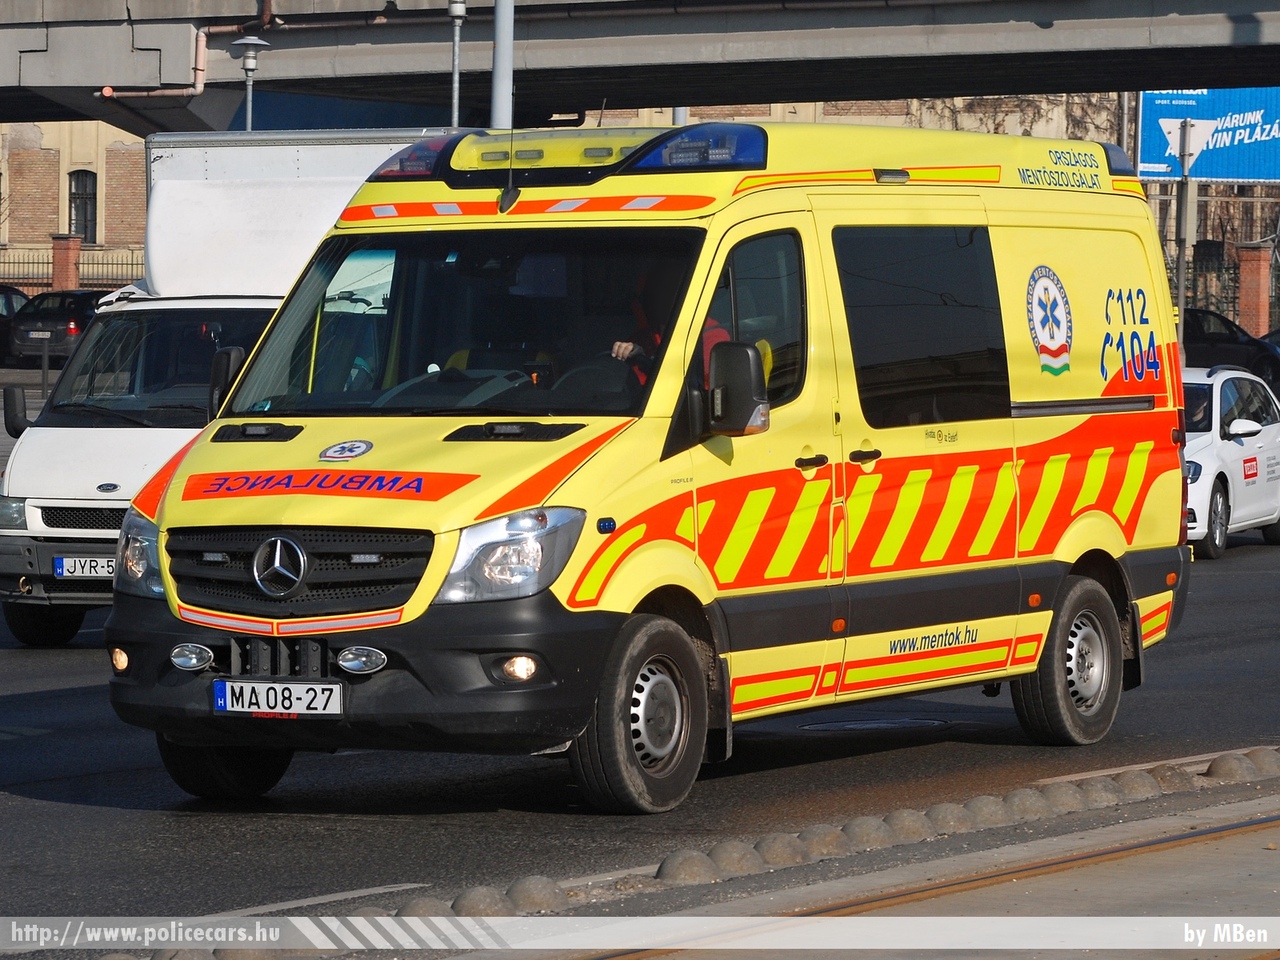 Mercedes-Benz Sprinter II facelift 316CDI Profile, Heros, Országos Mentõszolgálat, fotó: MBen
Keywords: magyar Magyarország mentő mentőautó OMSZ Hungary hungarian ambulance MA08-27